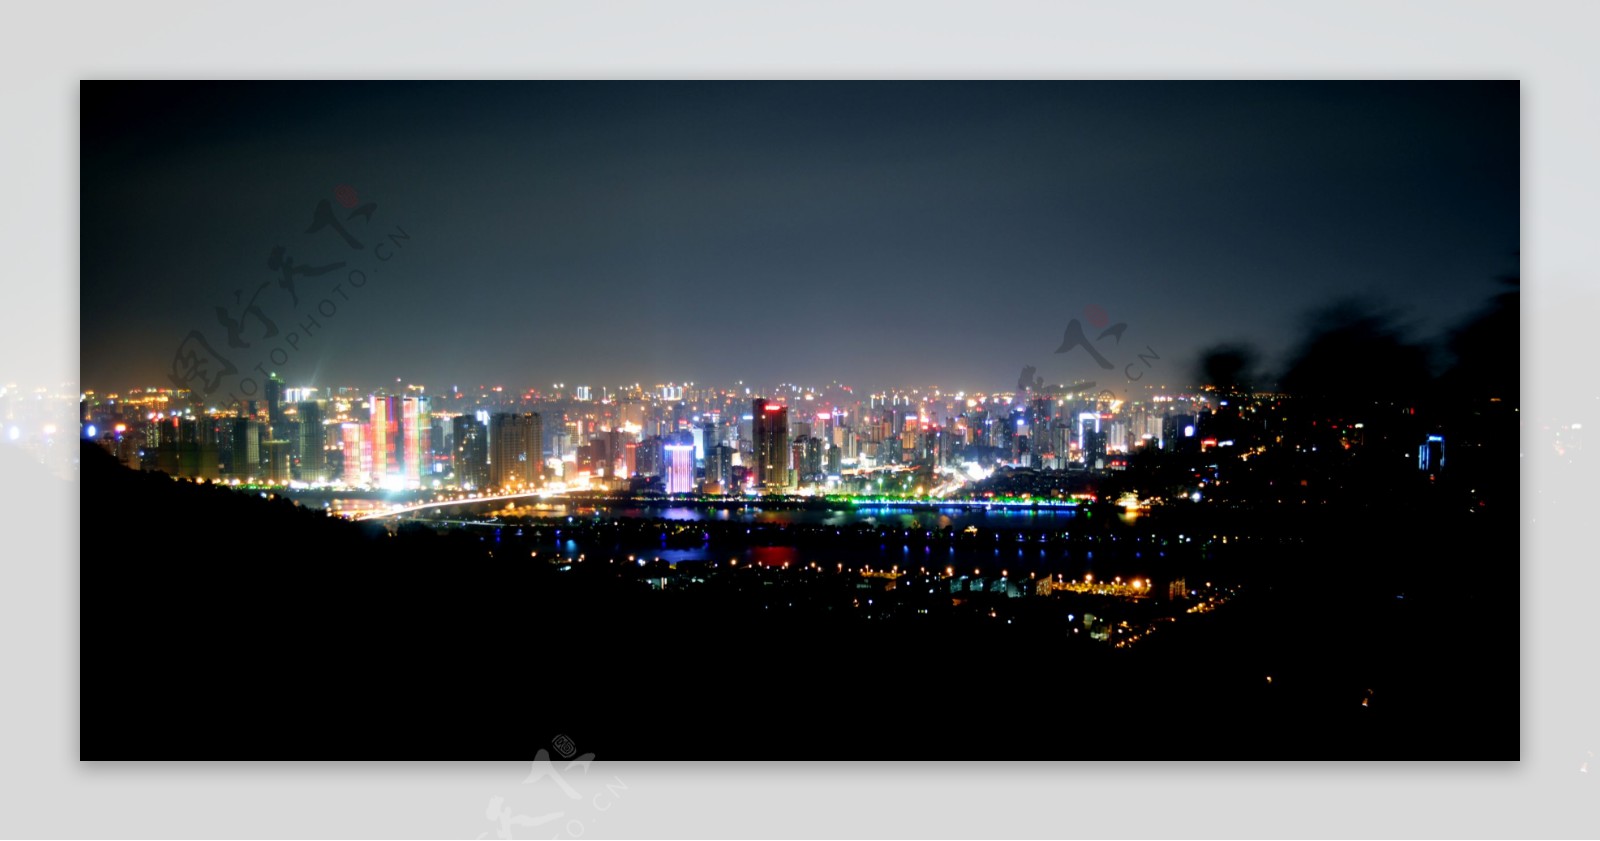 长沙夜景图片